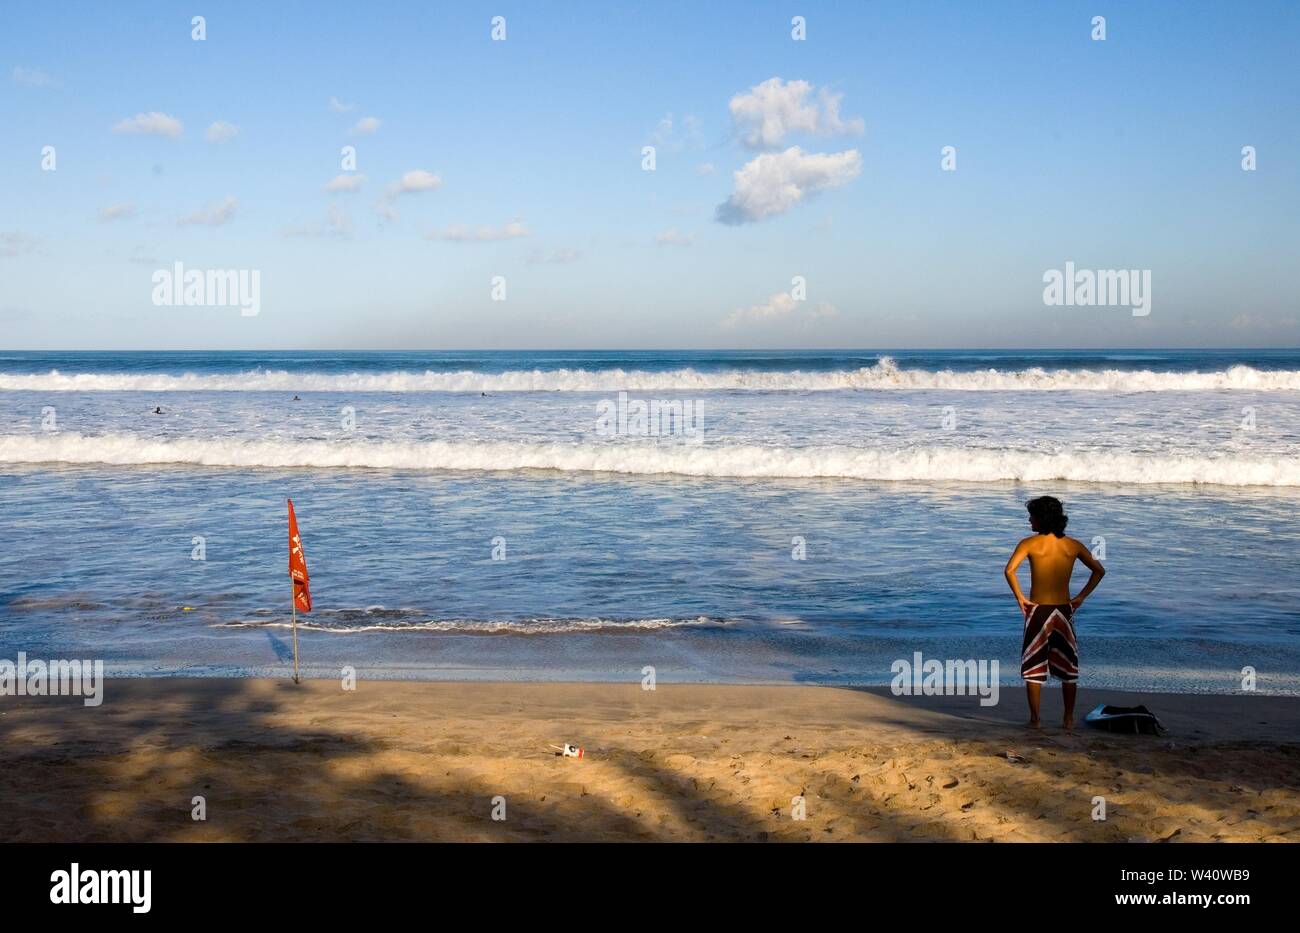 La spiaggia di Kuta Beach, Bali, Indonesia - Giugno 2019 : un surfista è controllare l'onda su una spiaggia con un contrassegno di sicurezza. Foto Stock